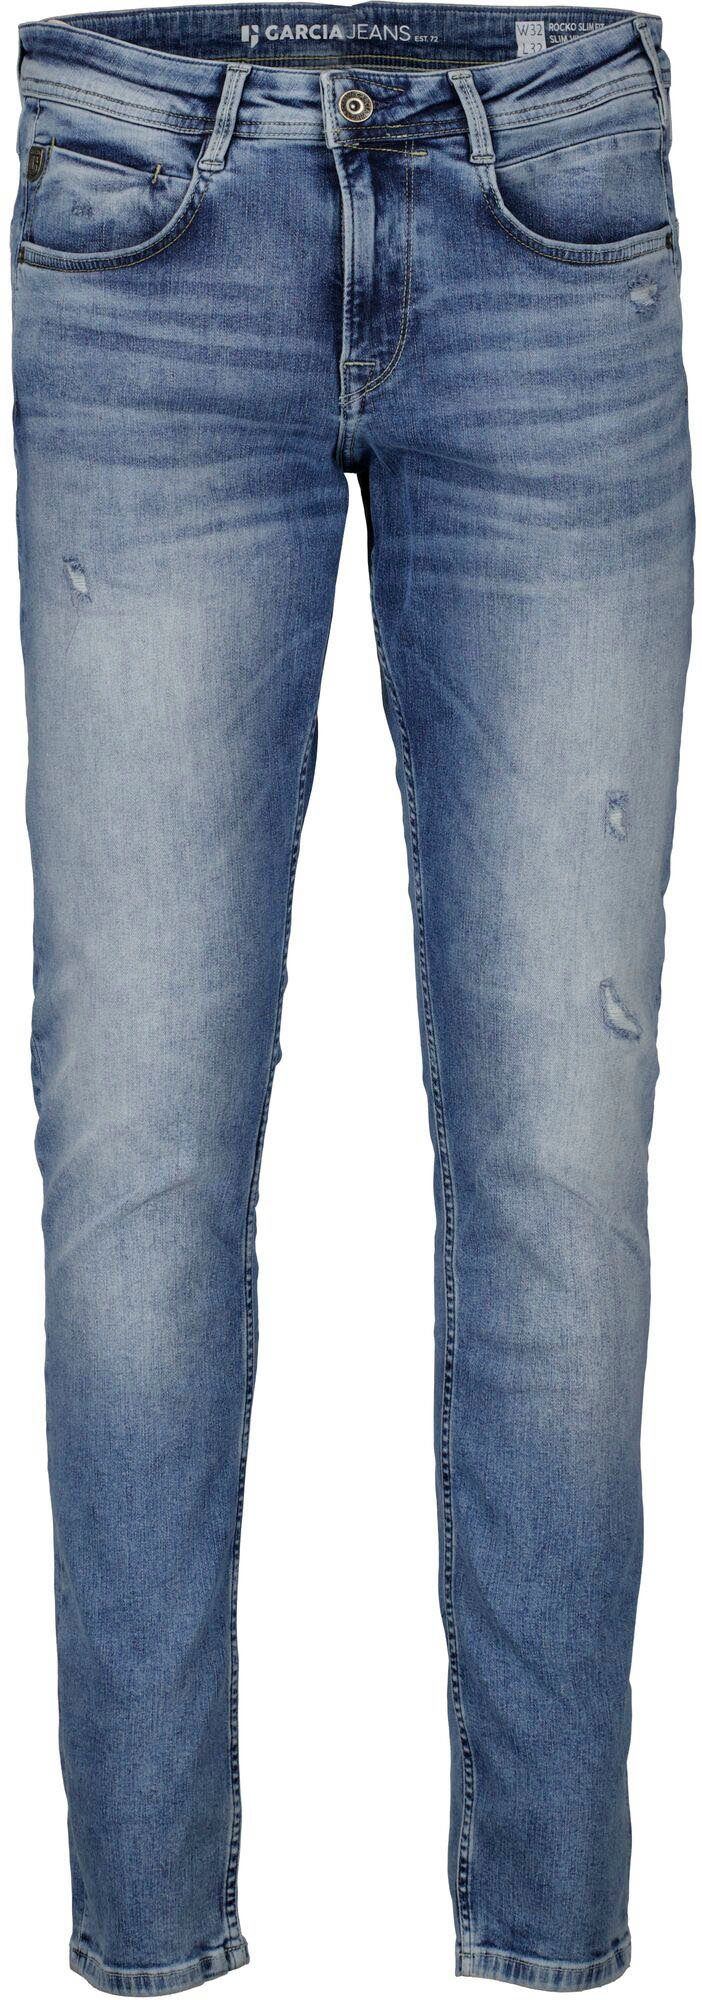 Garcia 5-Pocket-Jeans Rocko in verschiedenen Waschungen vintage used